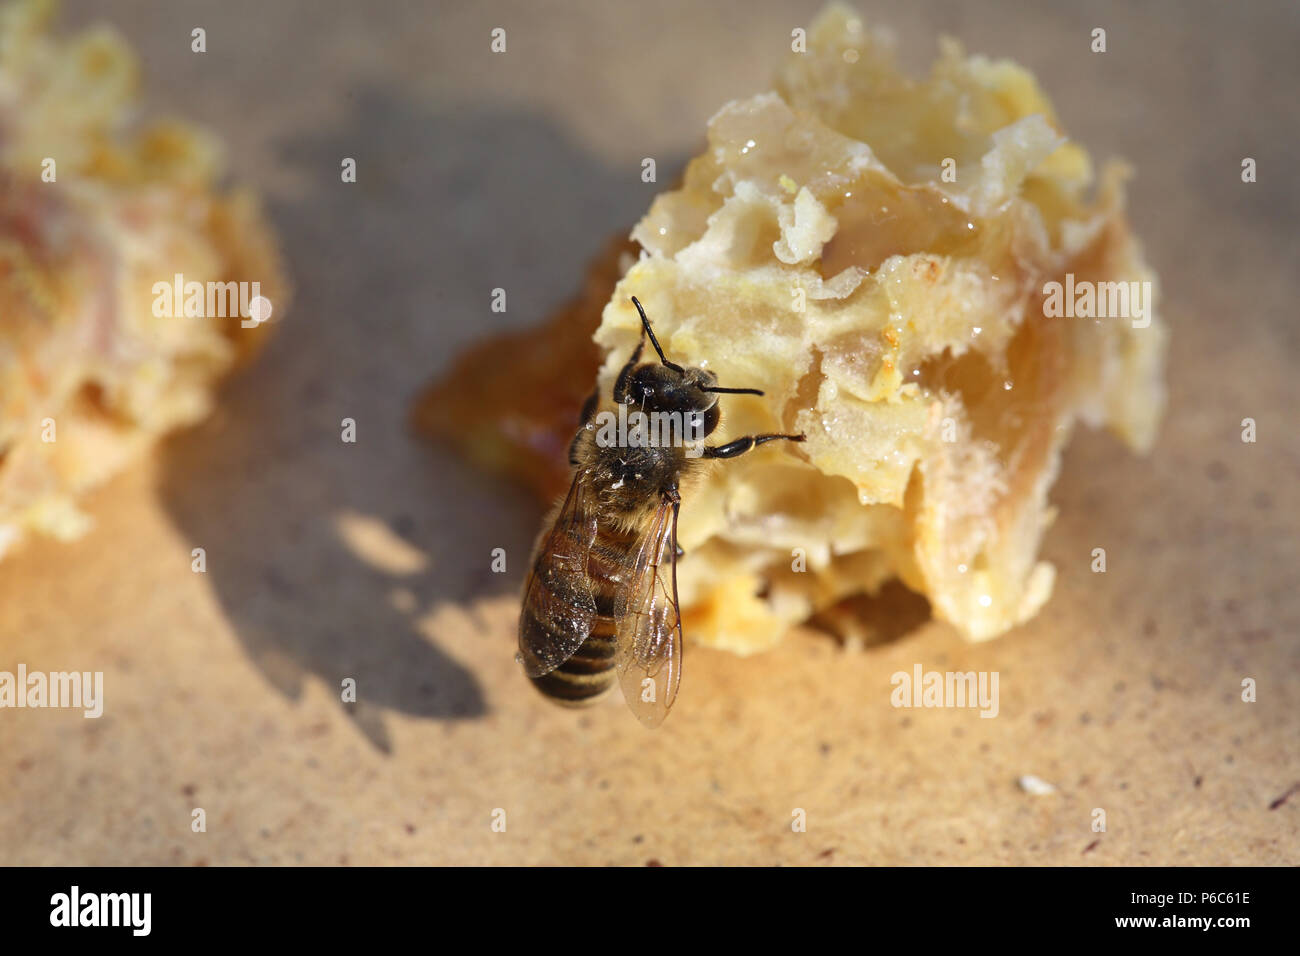 Berlin, Deutschland - Biene saugt Honig von einem gebrochenen Stück Wabe Stockfoto